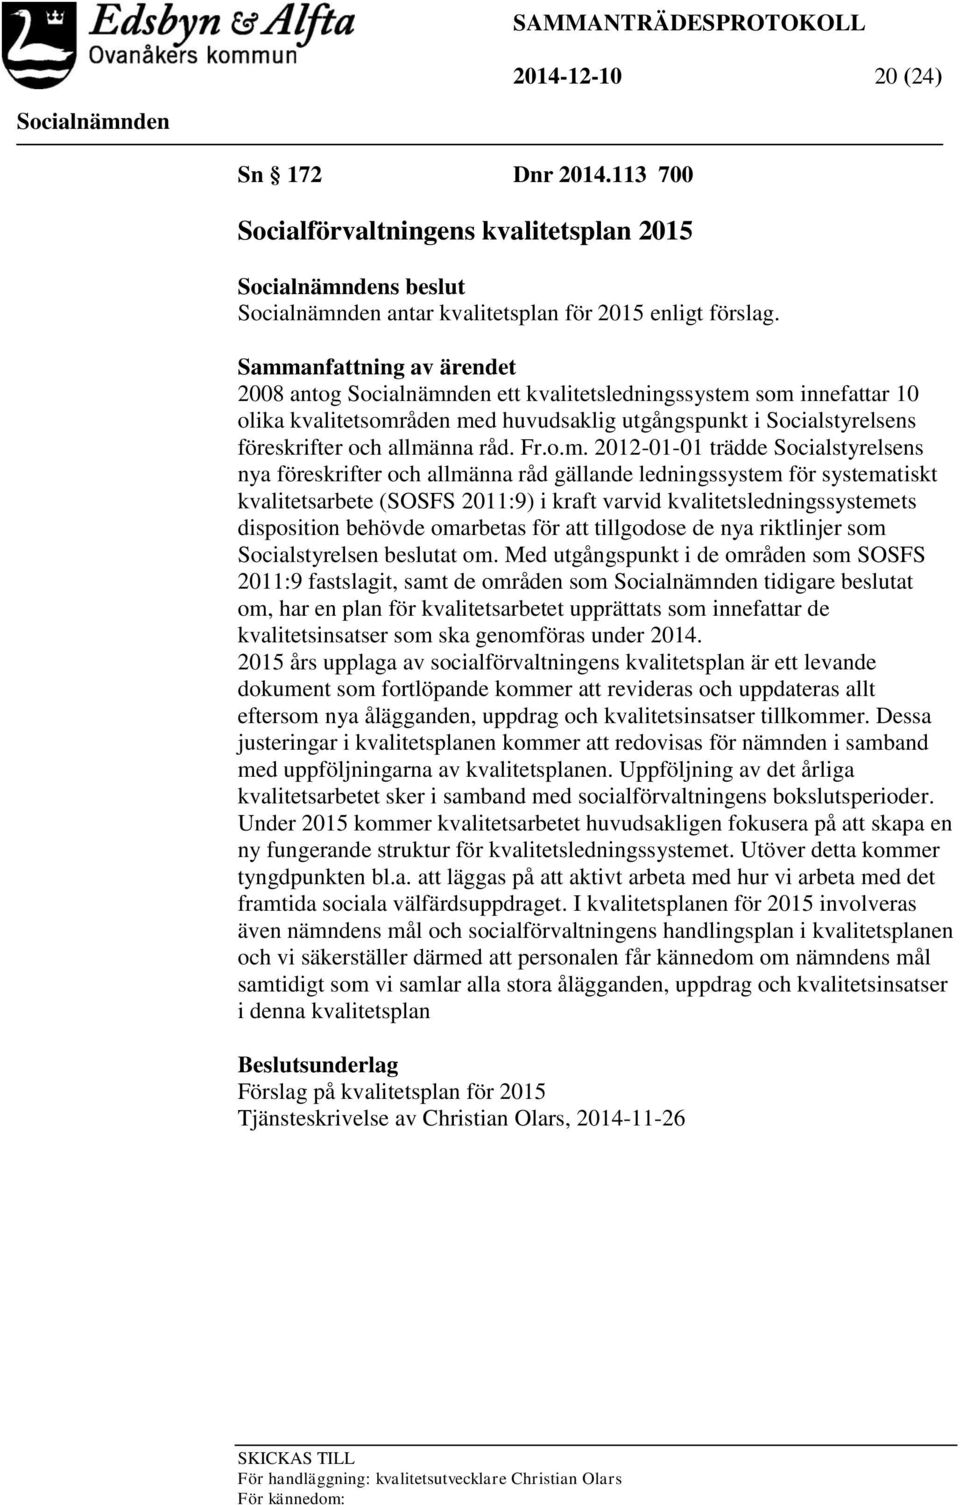 2012-01-01 trädde Socialstyrelsens nya föreskrifter och allmänna råd gällande ledningssystem för systematiskt kvalitetsarbete (SOSFS 2011:9) i kraft varvid kvalitetsledningssystemets disposition